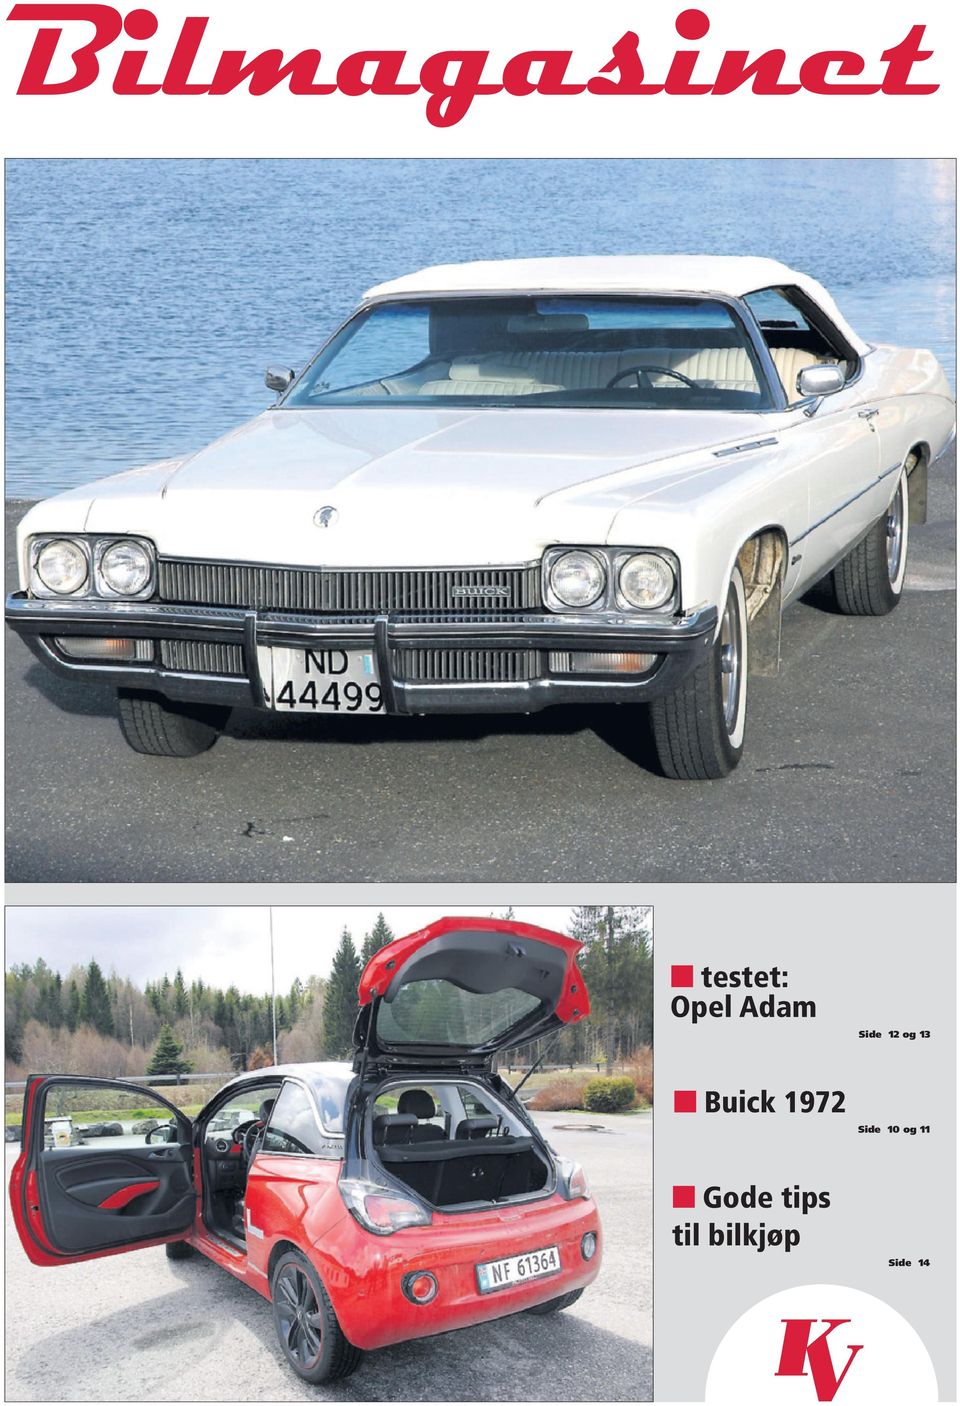 Buick 1972 Side 10 og 11